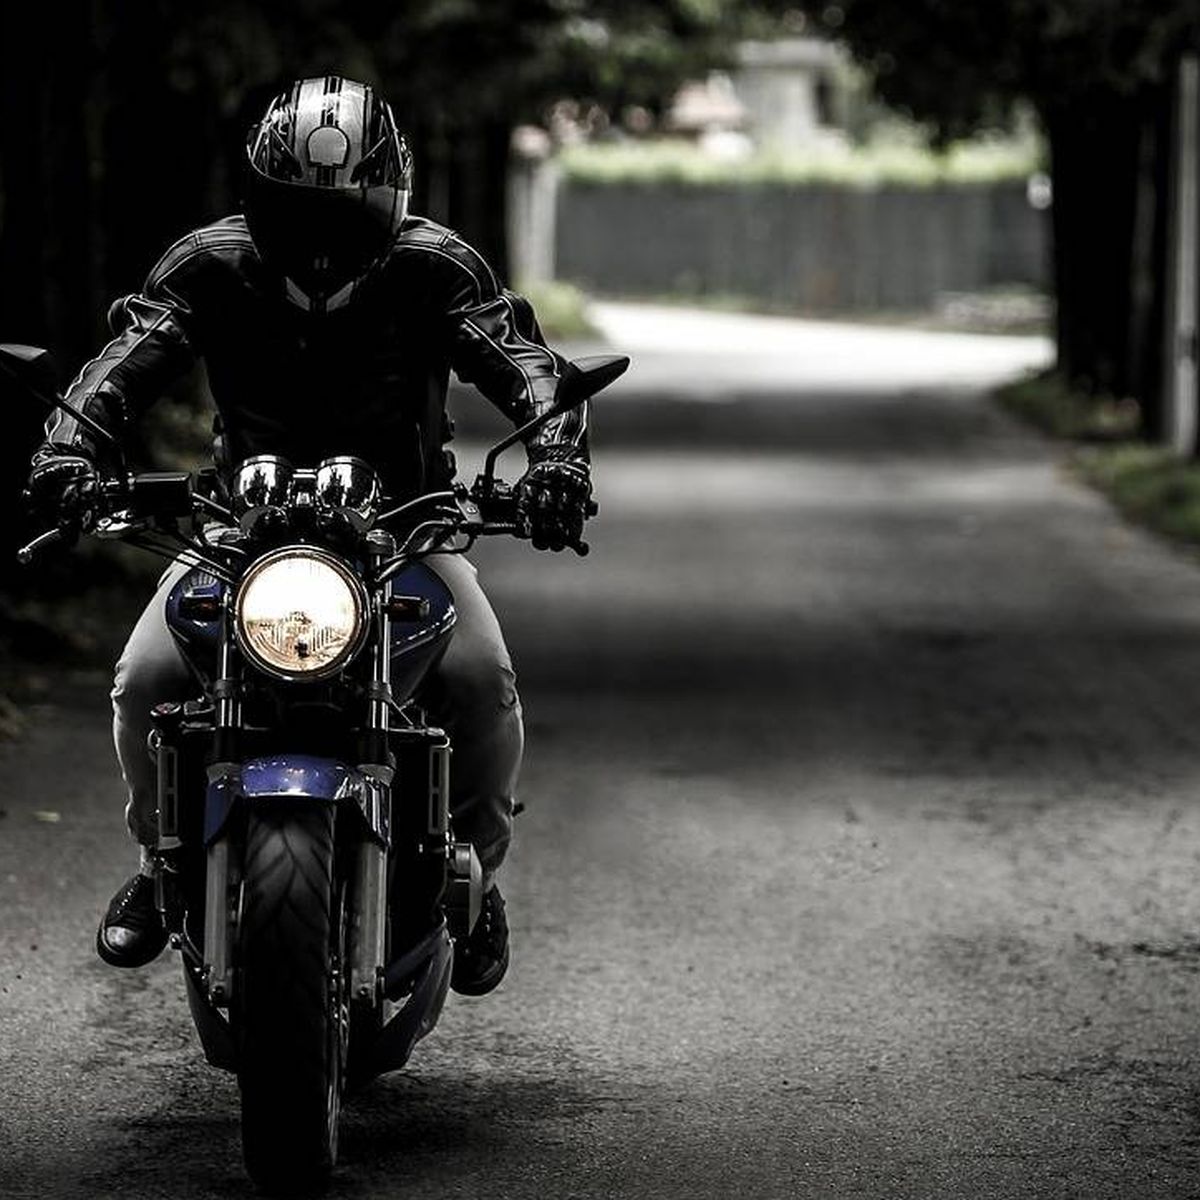 Uso de obligatorio si vas en moto: así será la nueva normativa de la